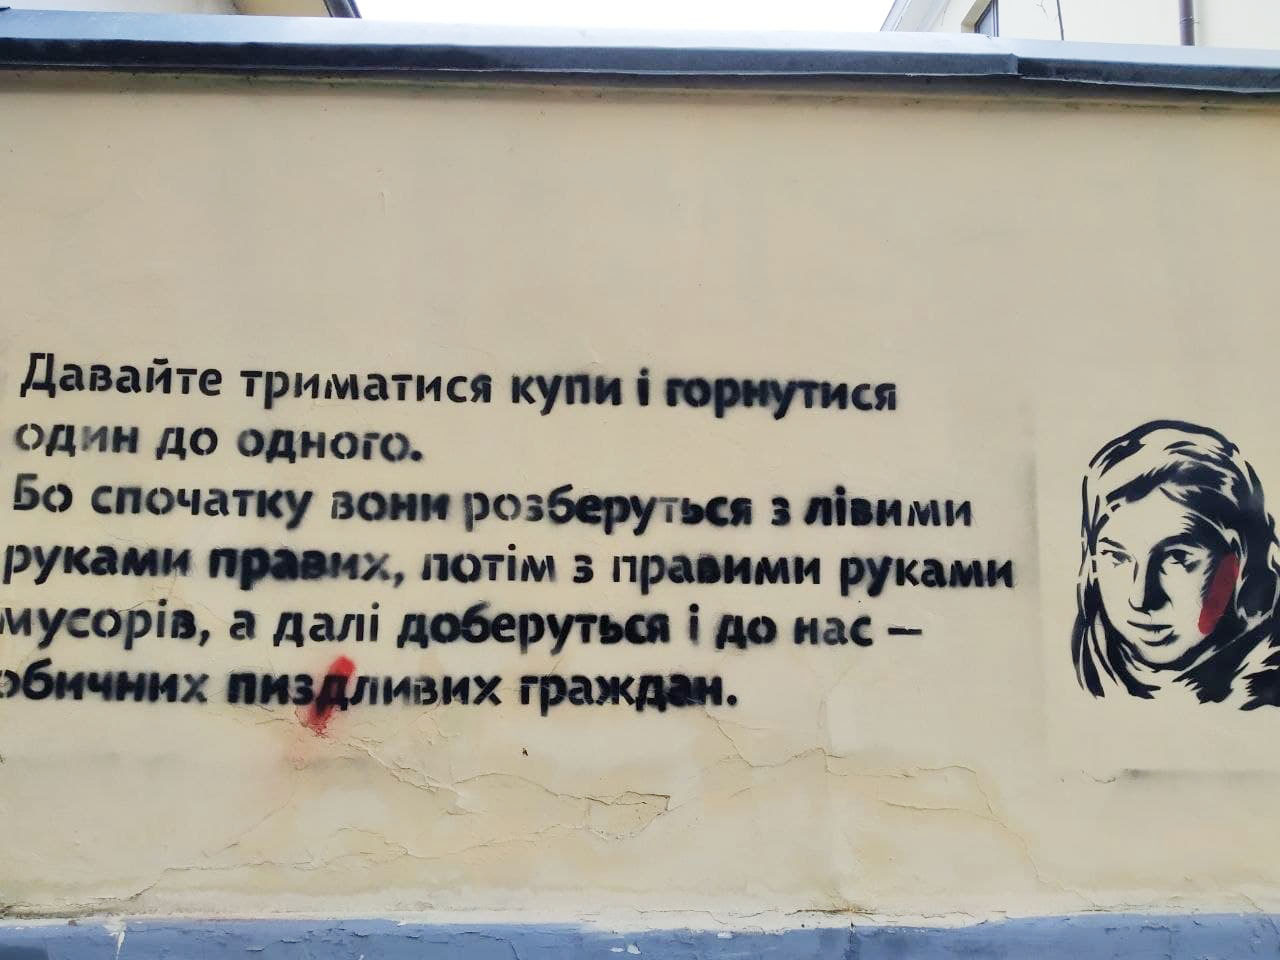 в Харкові, неподалік від обласного управління Нацполіції з'явилося графіті з портретом і цитатою Гандзюк.